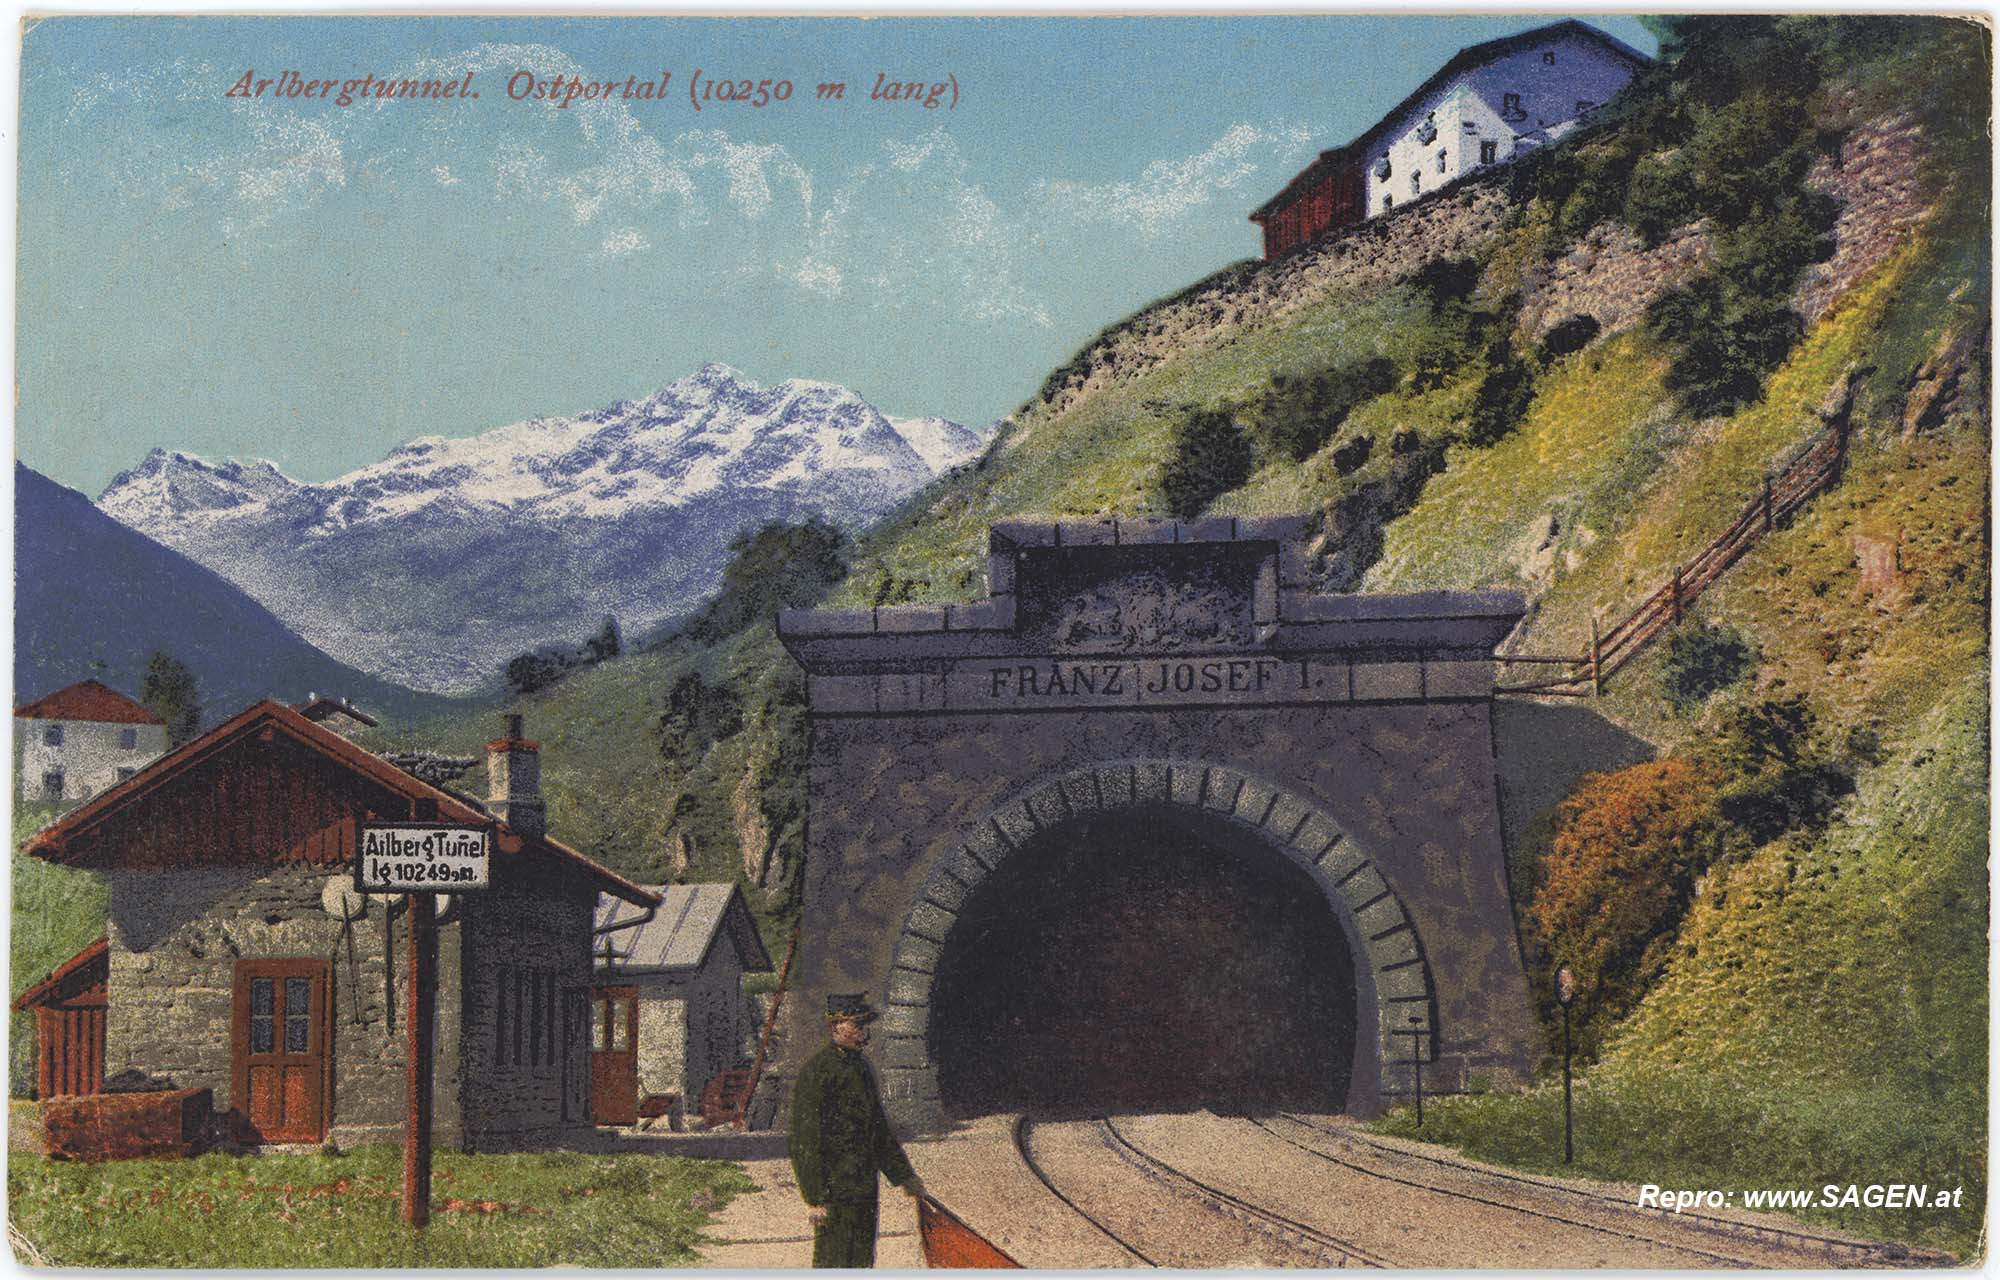 Arlbergtunnel. Ostportal (10250 m lang)